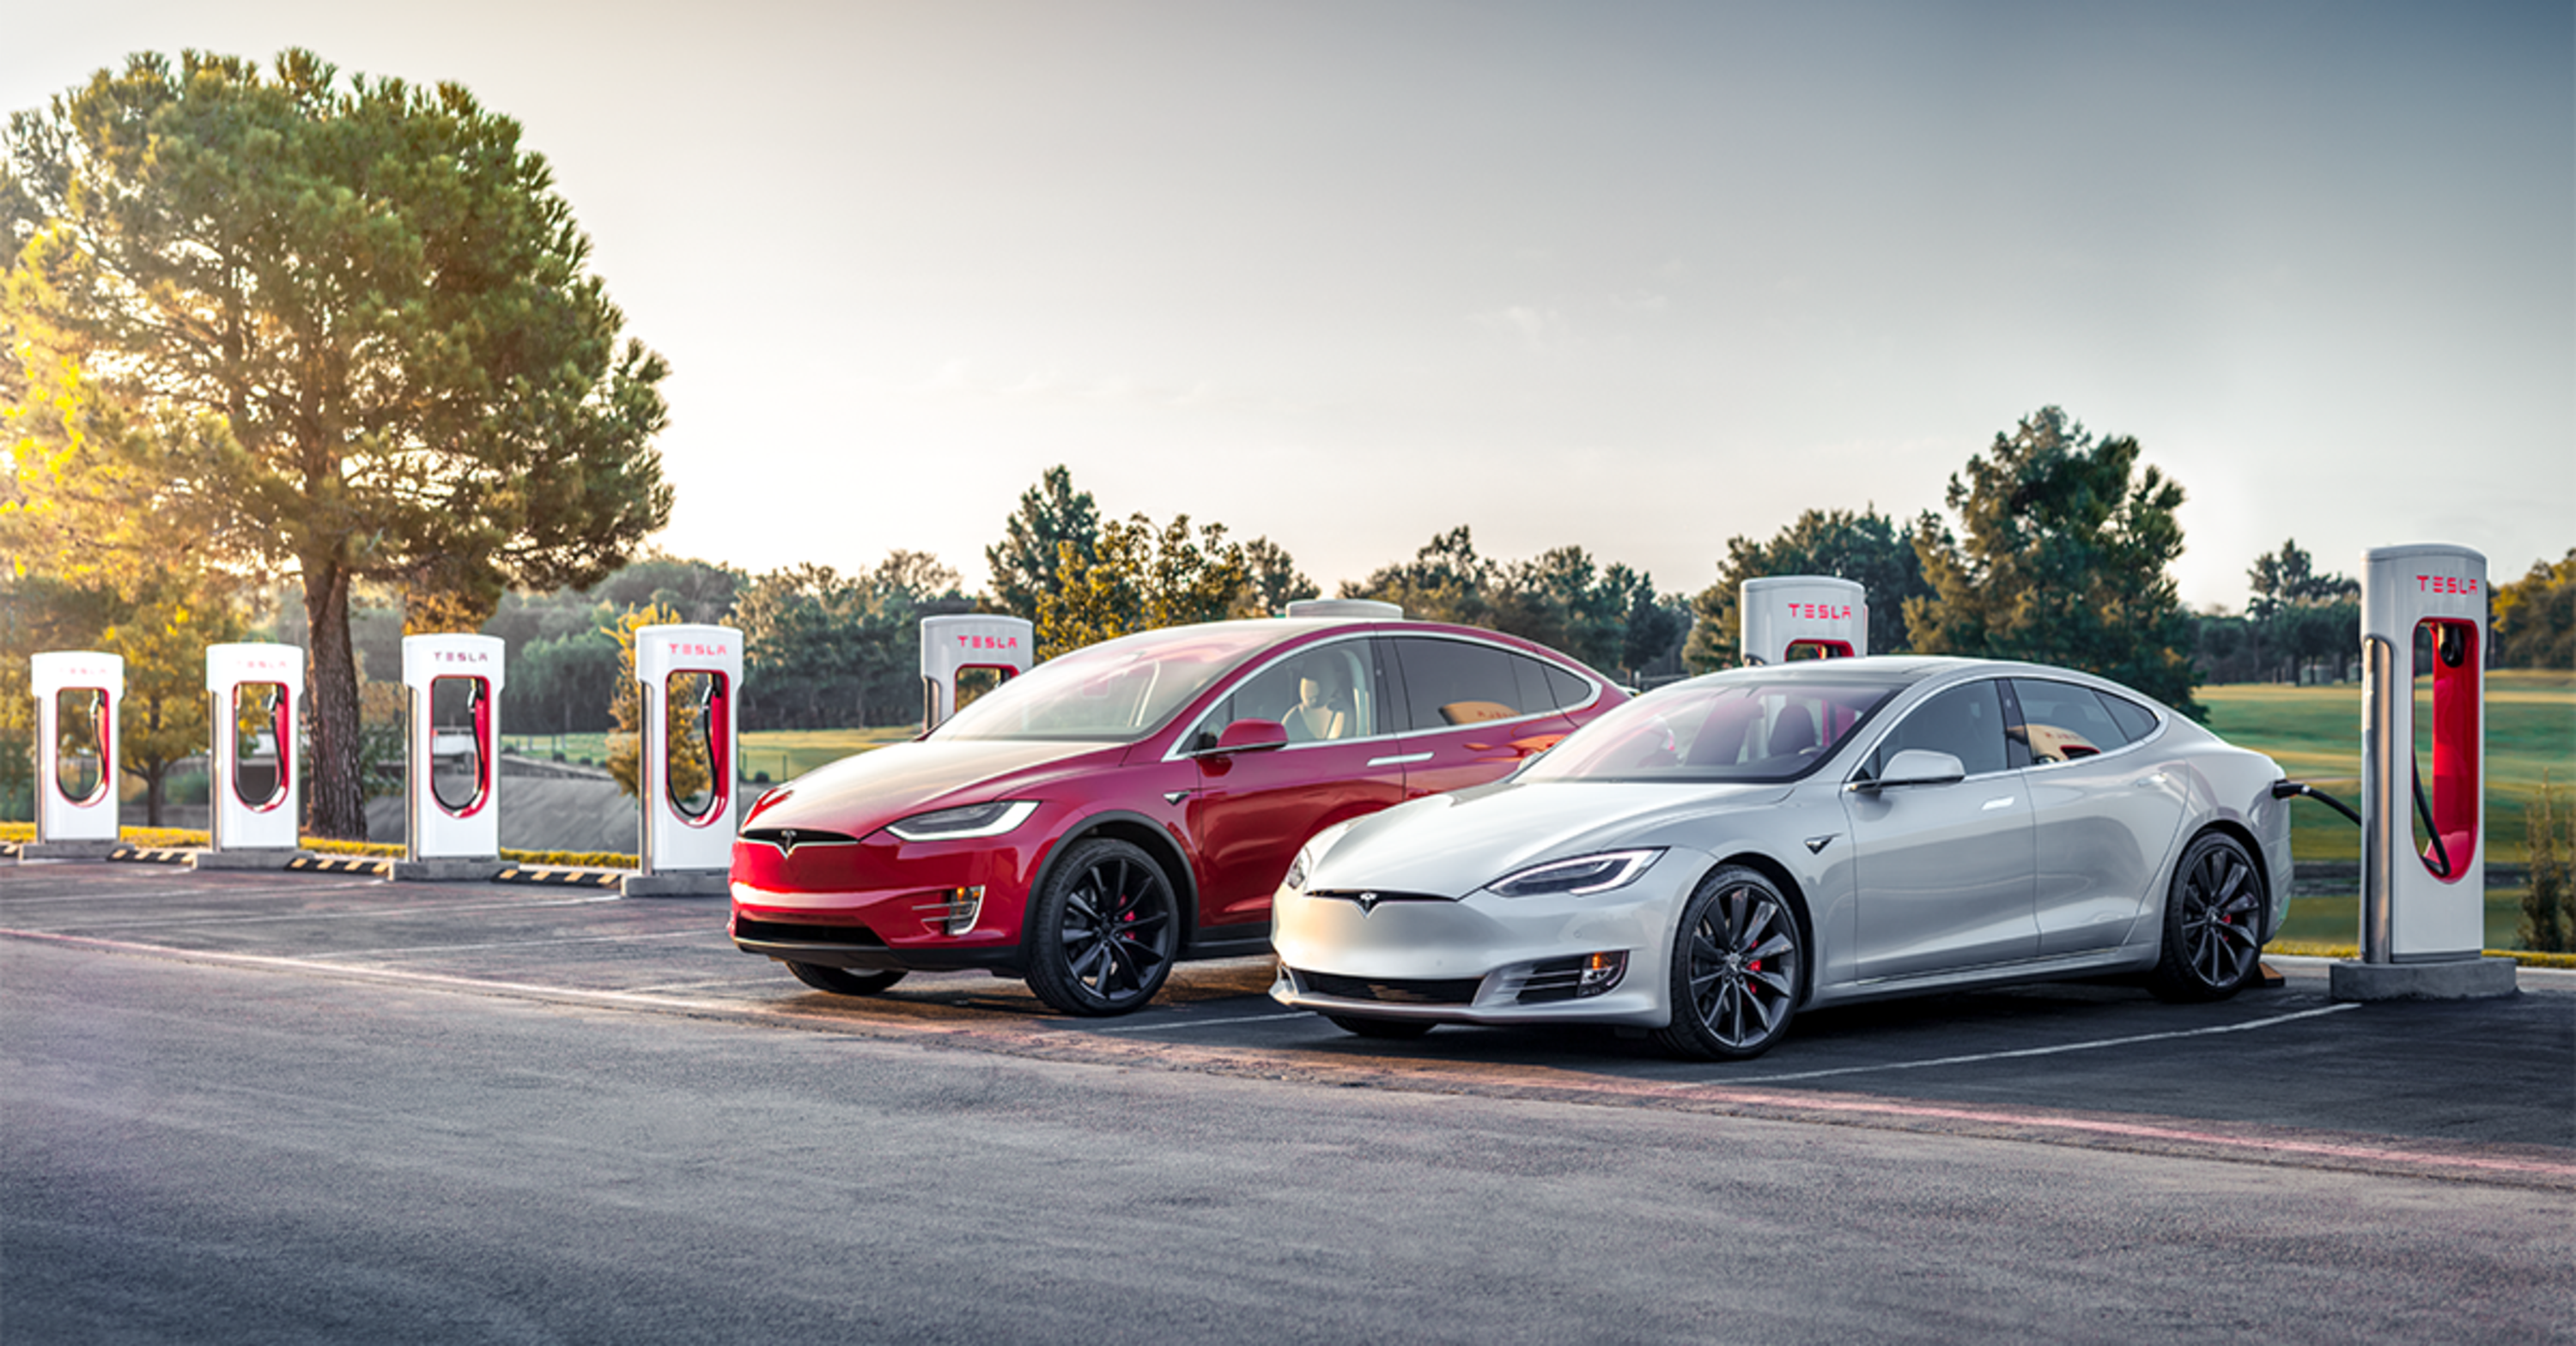 Incredibile ma vero grazie a Elon: ricarica gratis ai Tesla Supercharger [e posti lavoro per studenti]